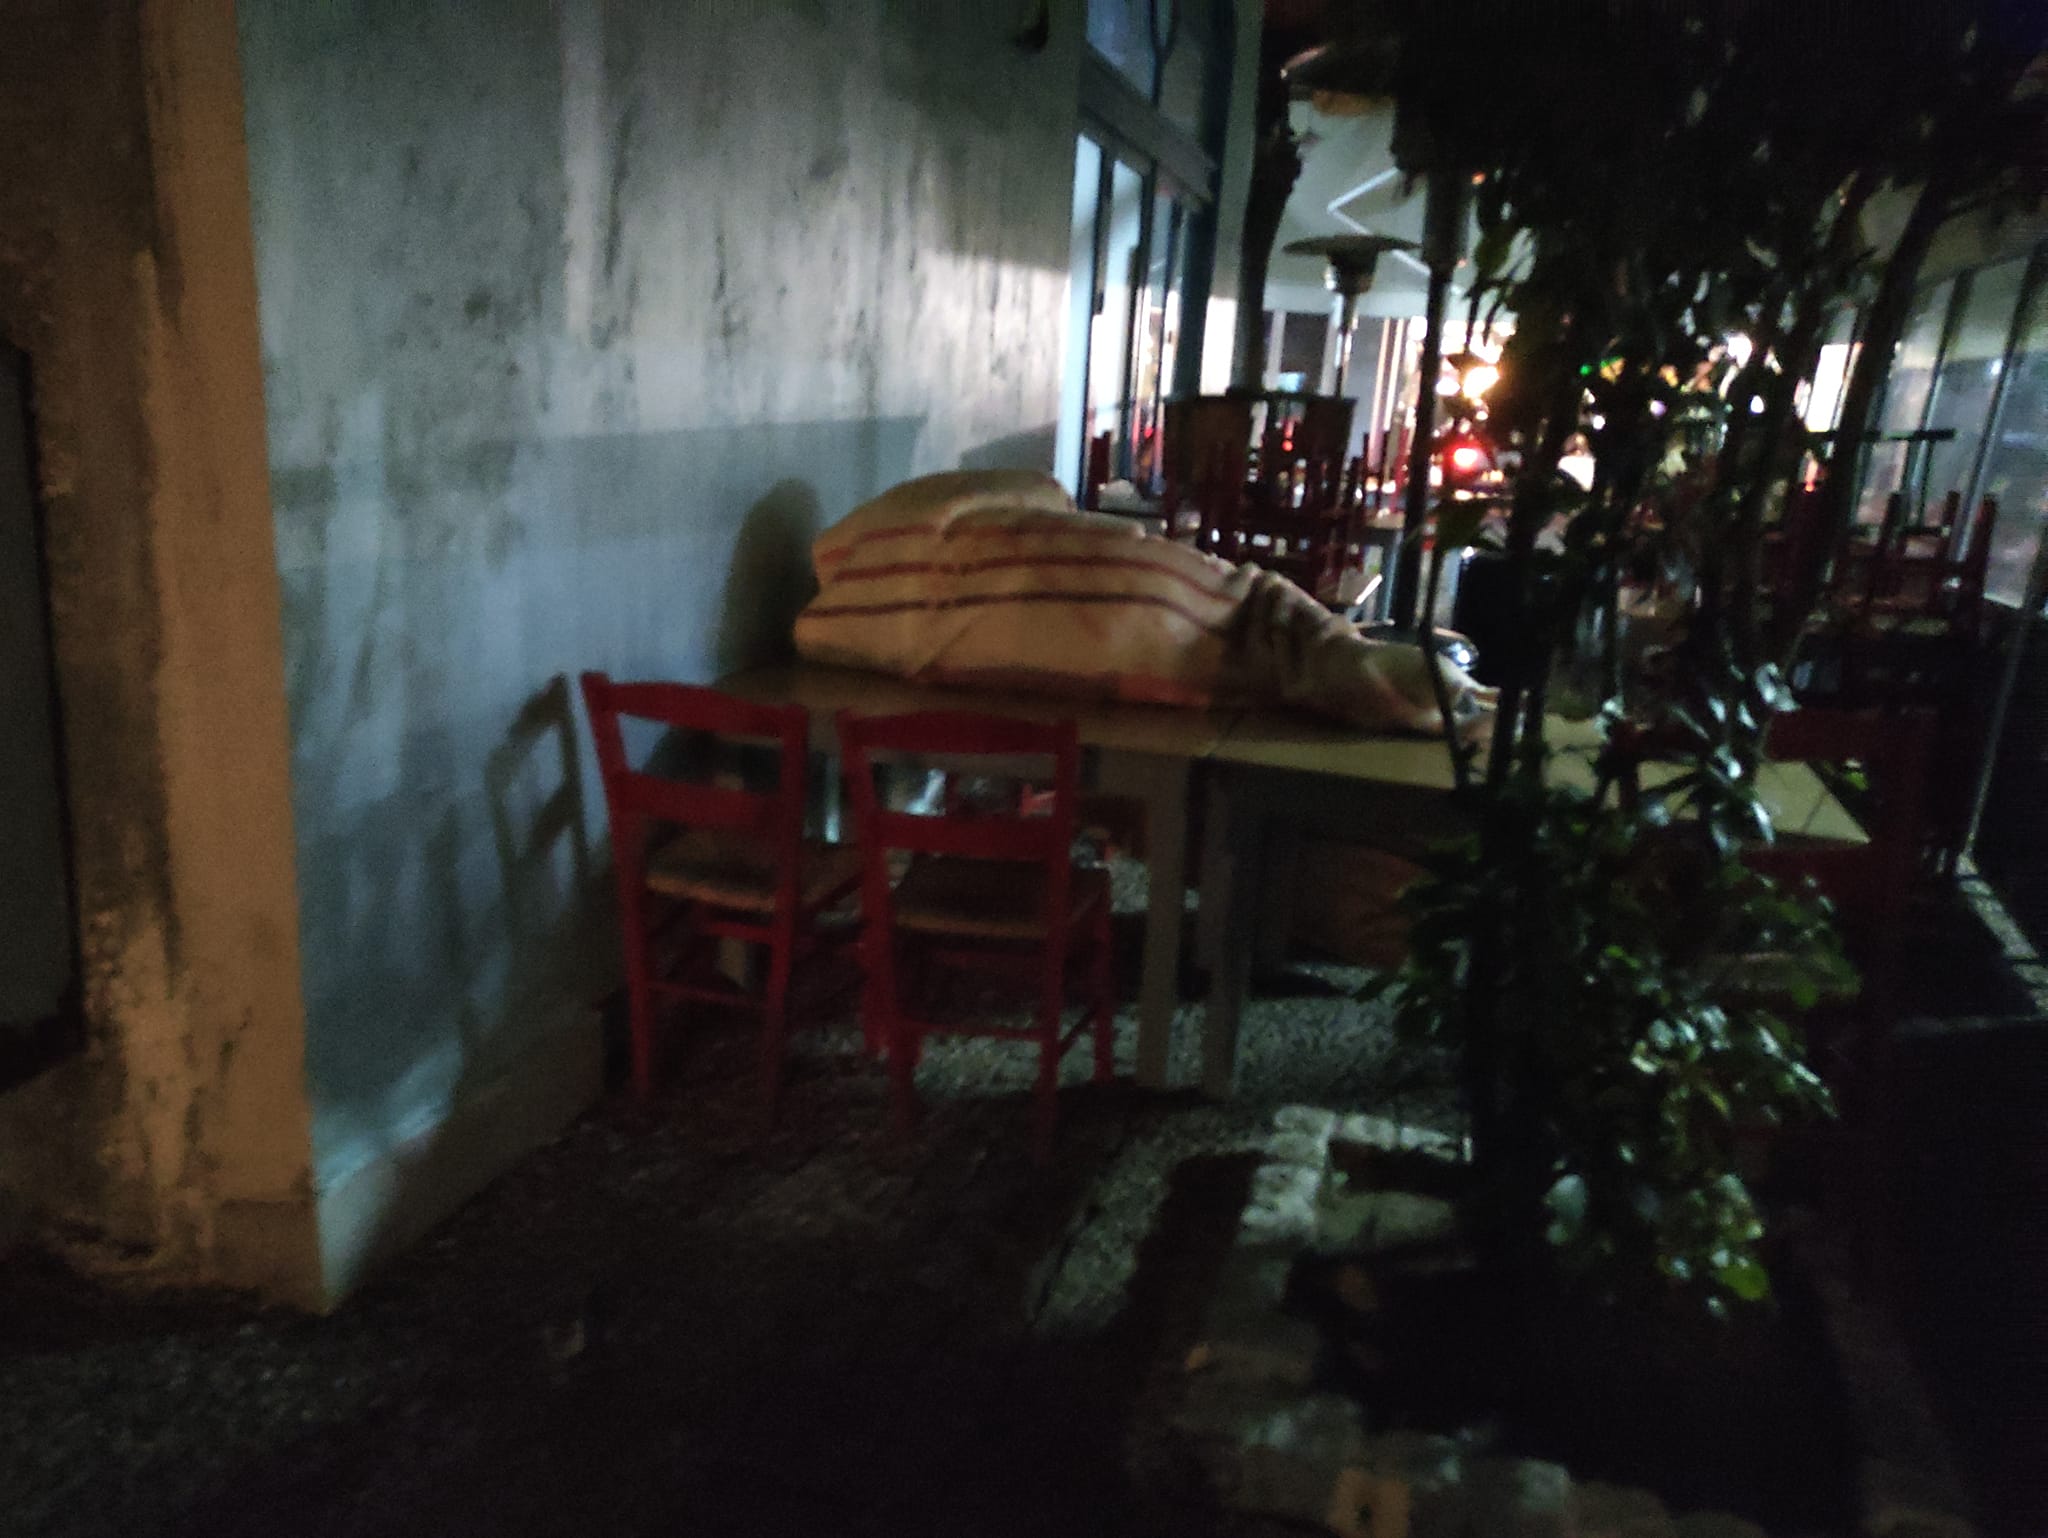 Σέρρες: Η πιο σκληρή εικόνα της νύχτας – Ο άστεγος που μίλησε και συγκίνησε τον επιχειρηματία